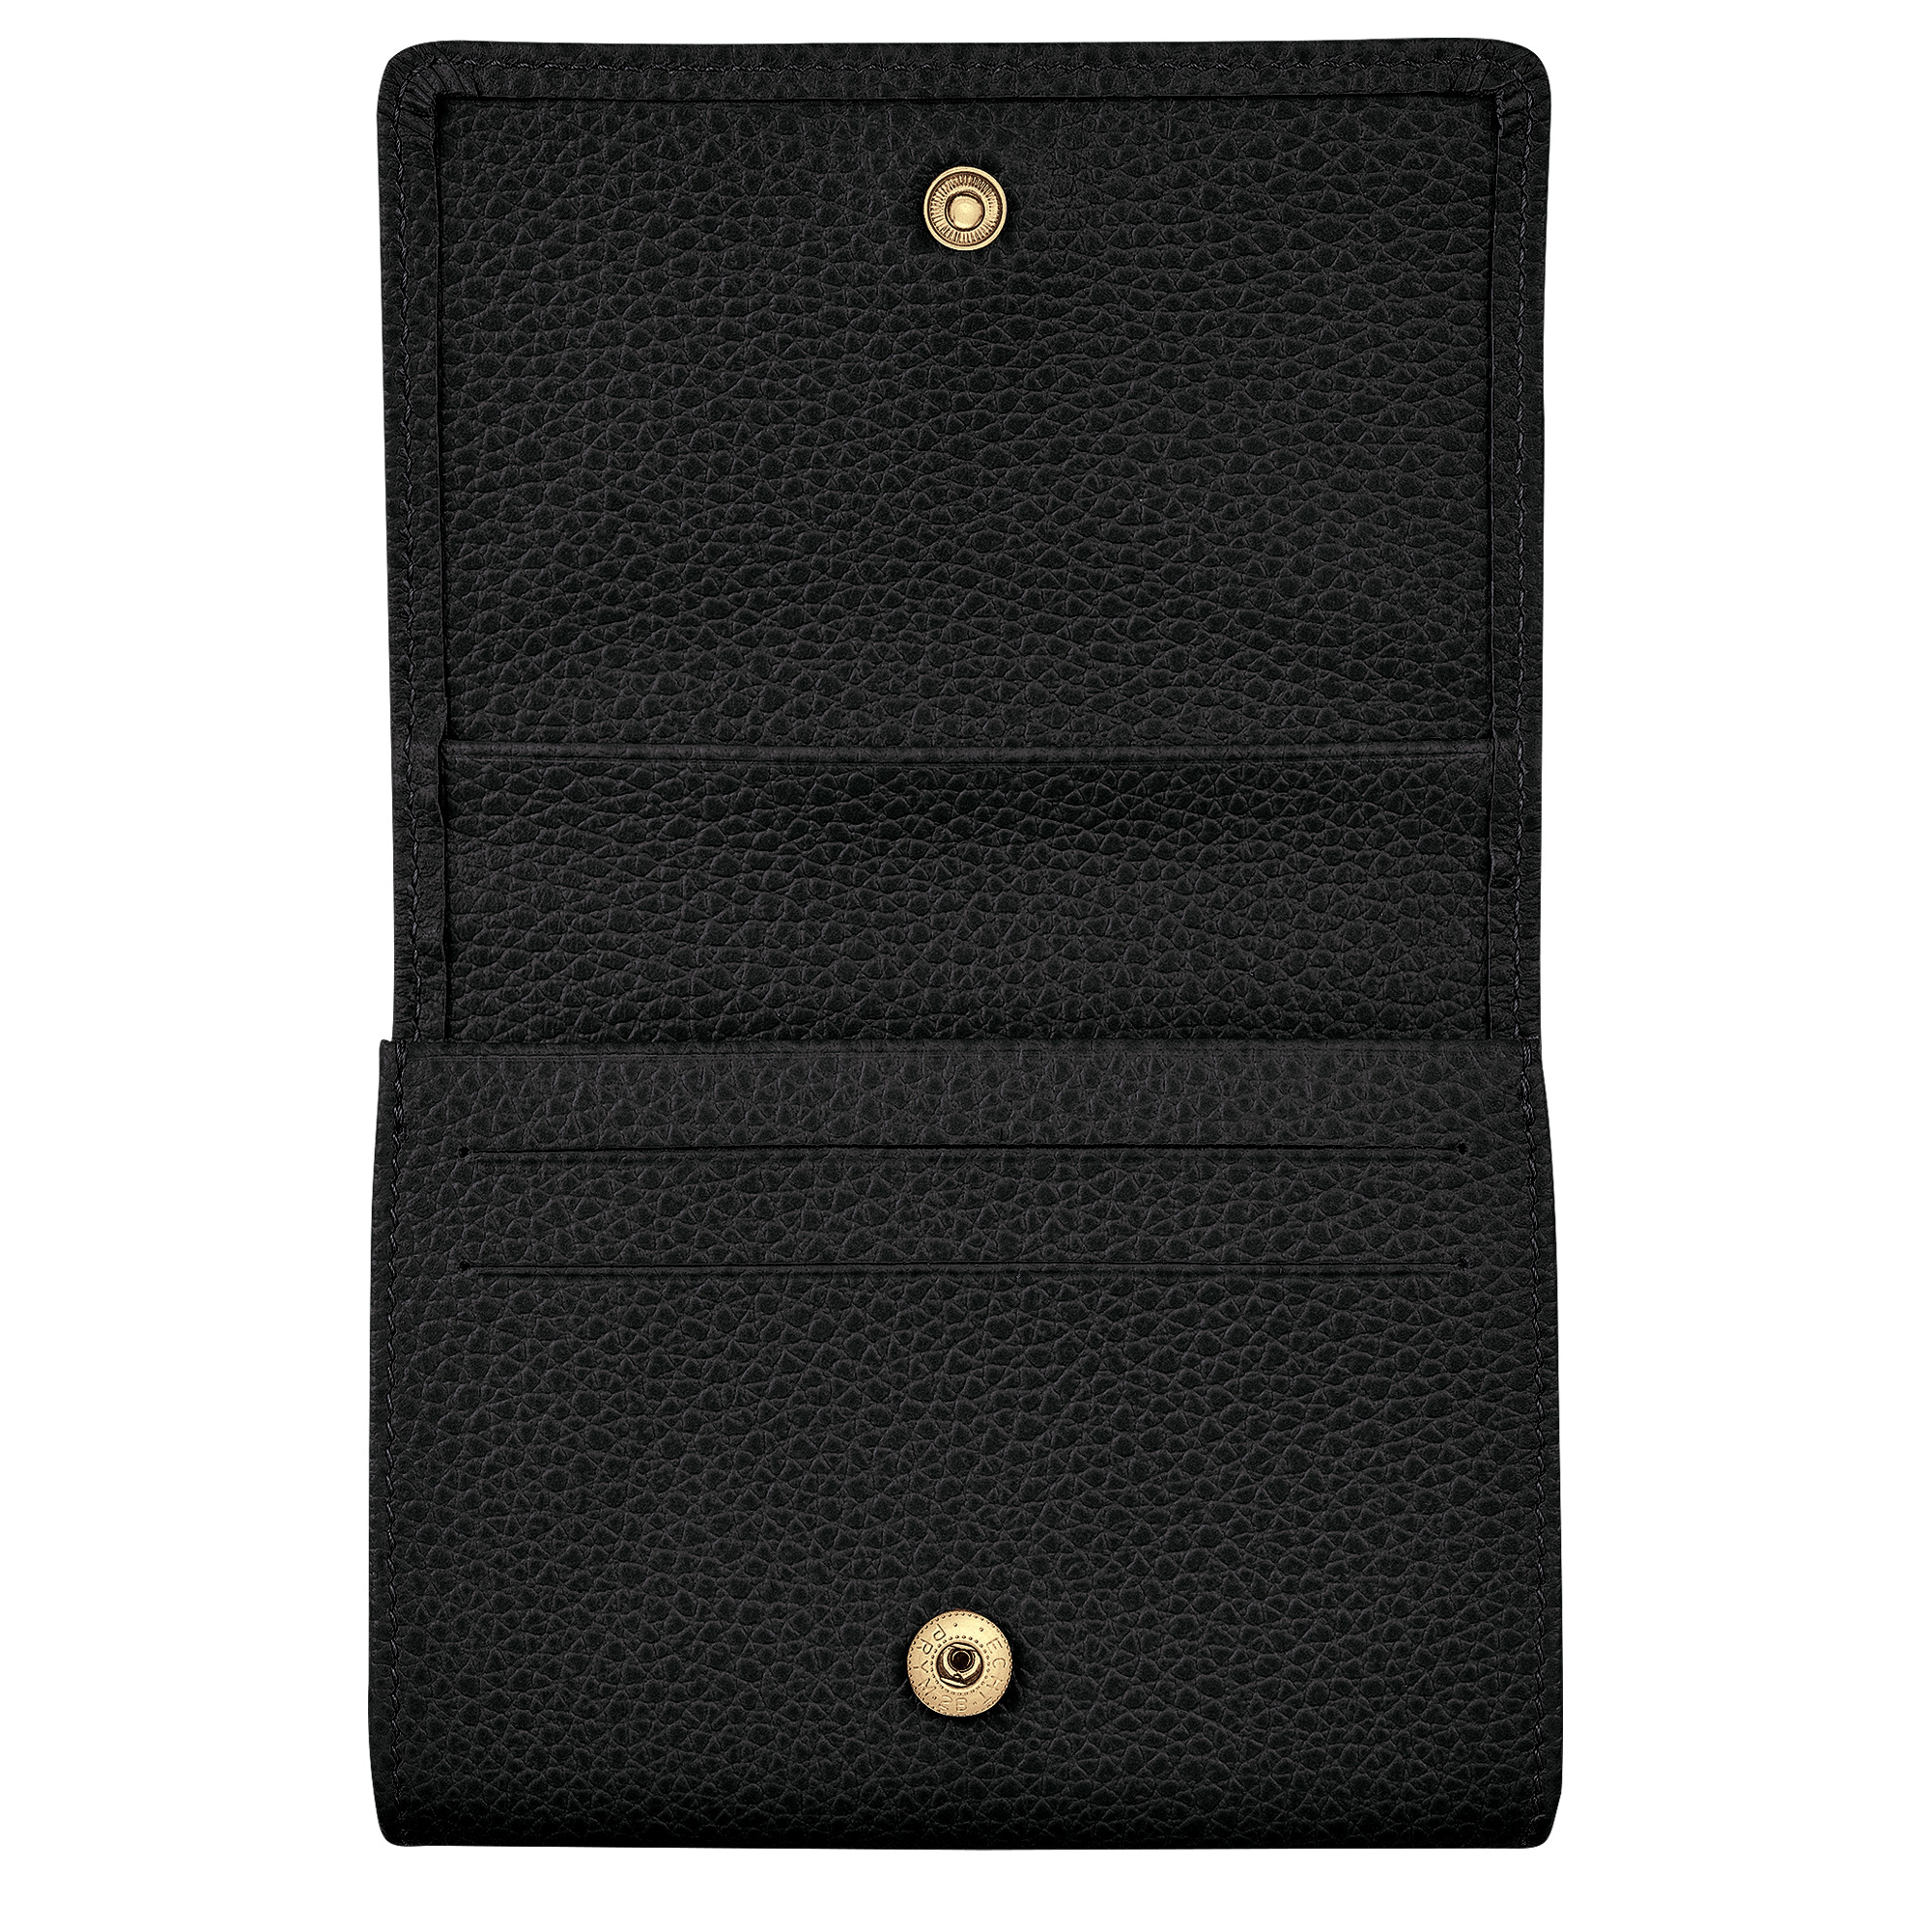 Le Foulonné Coin purse Black - Leather - 2